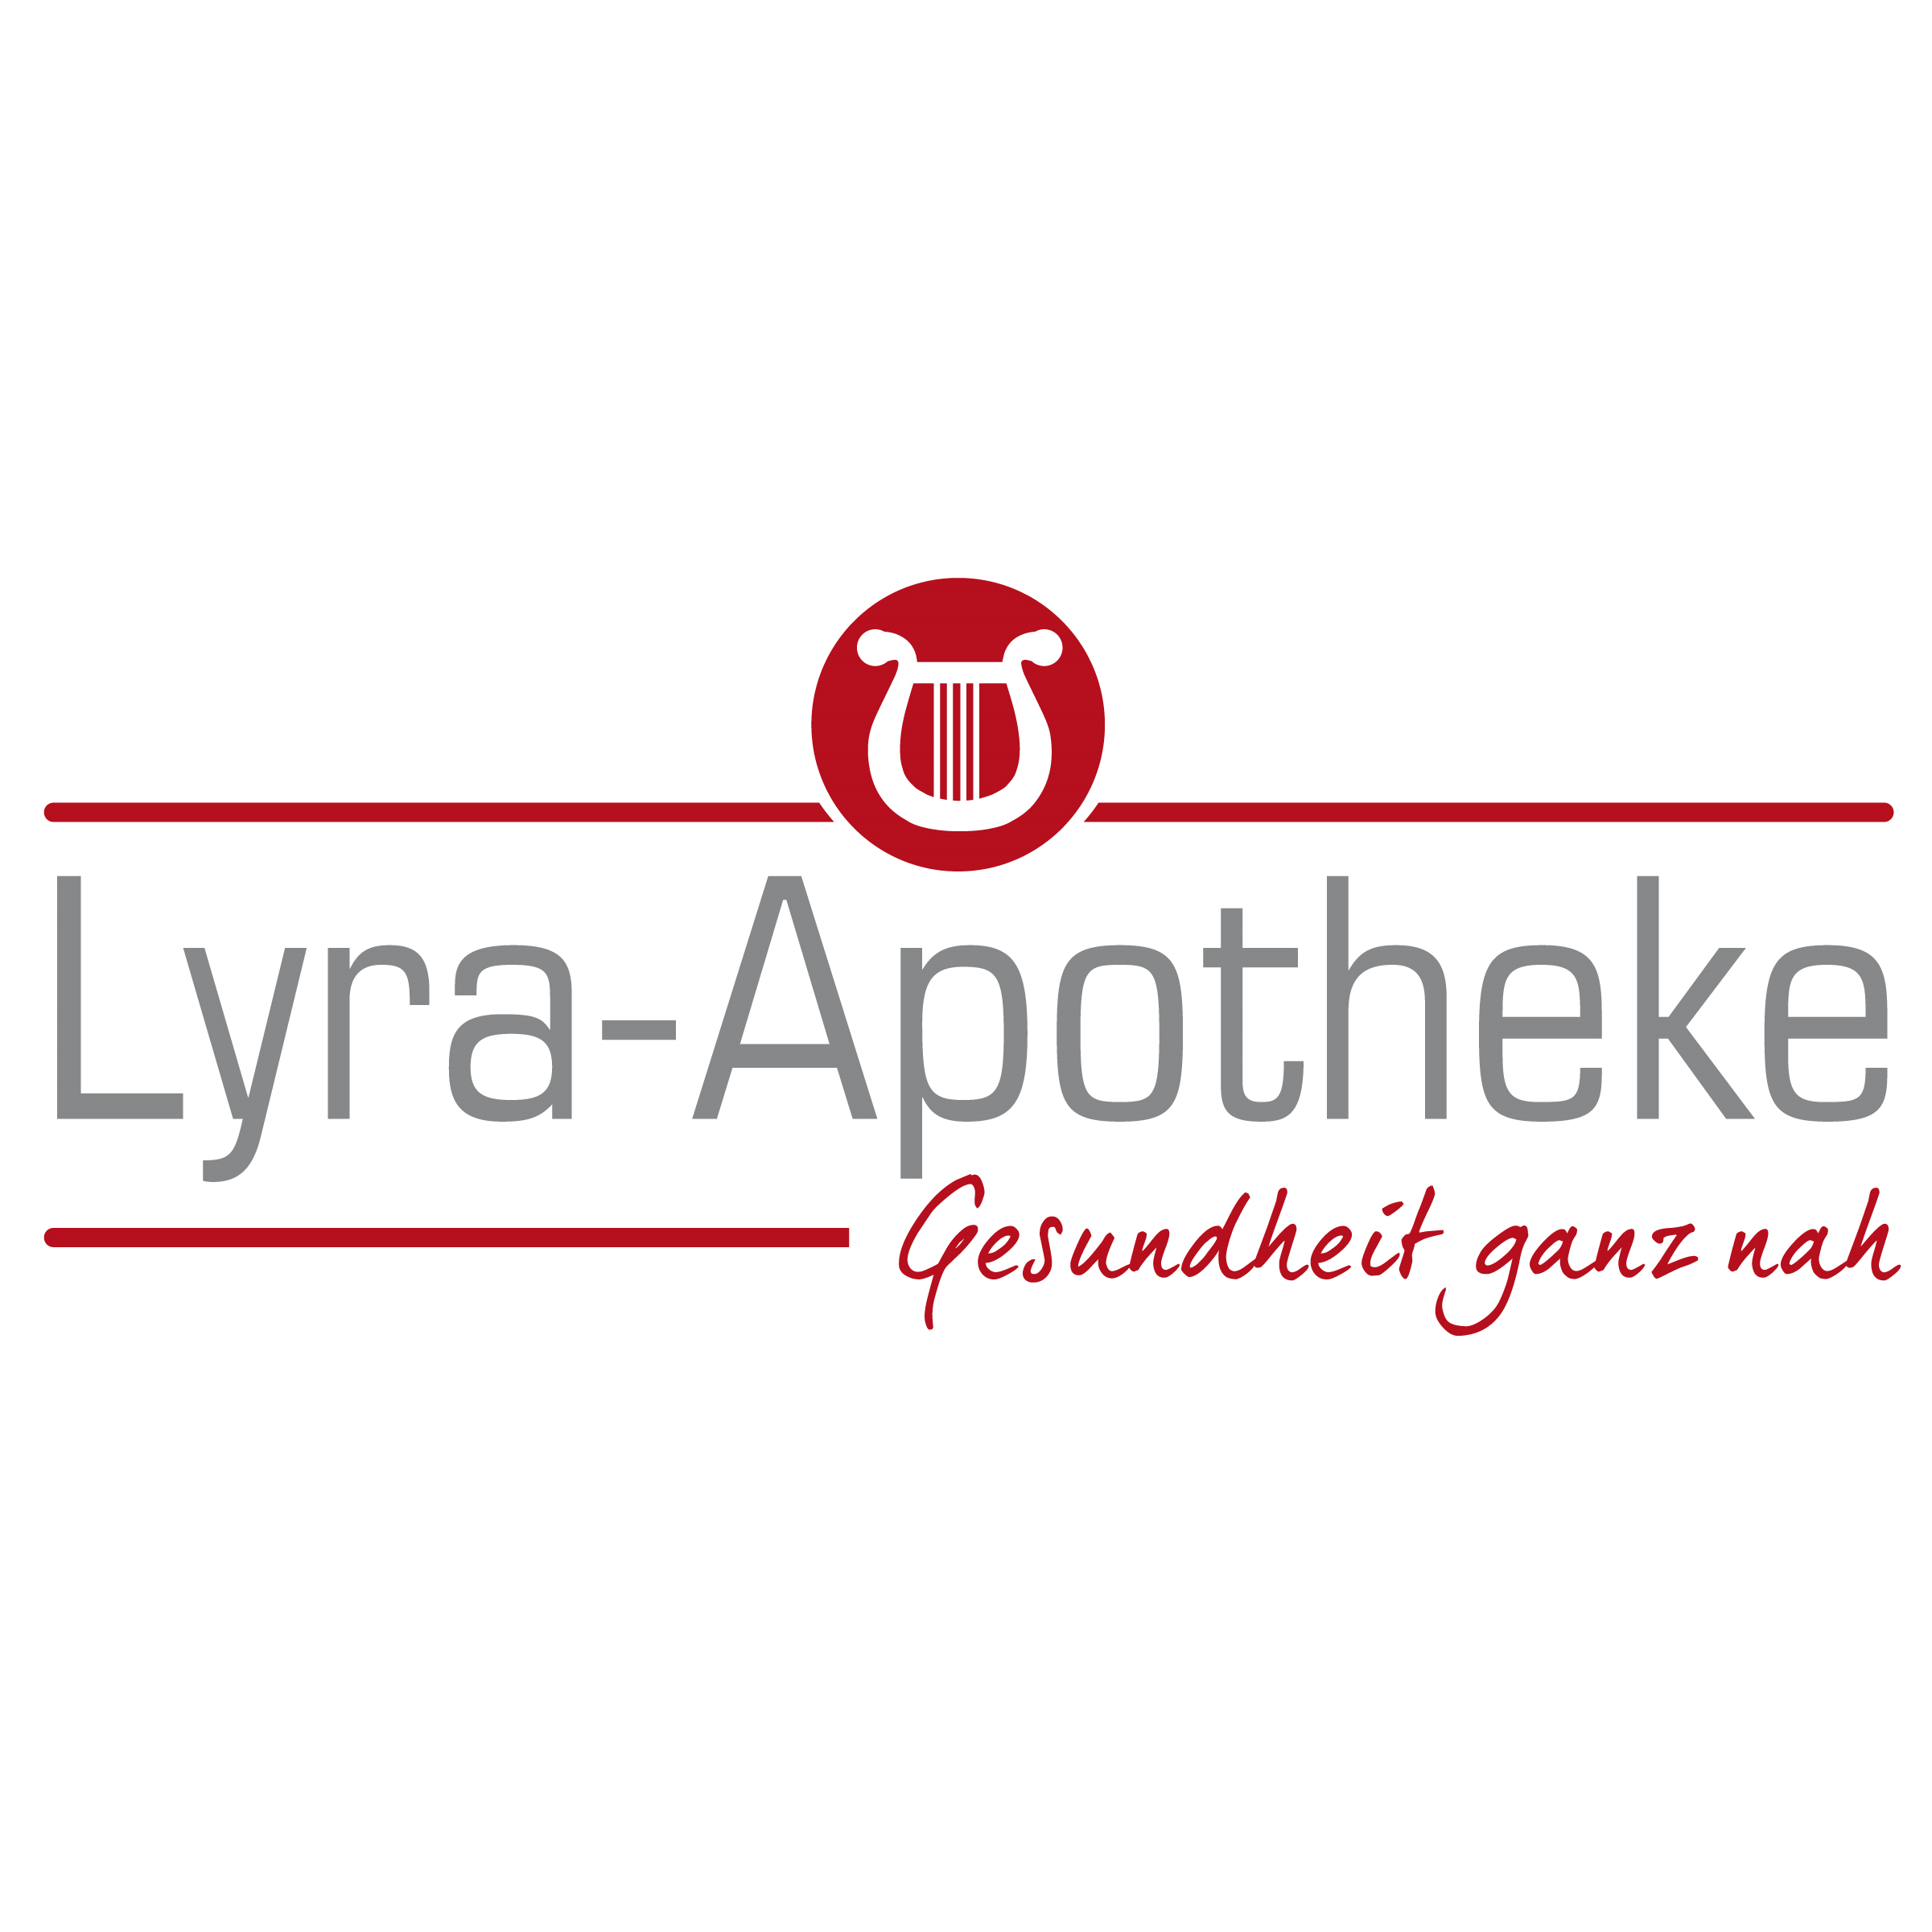 Lyra-Apotheke in Gehrden bei Hannover - Logo